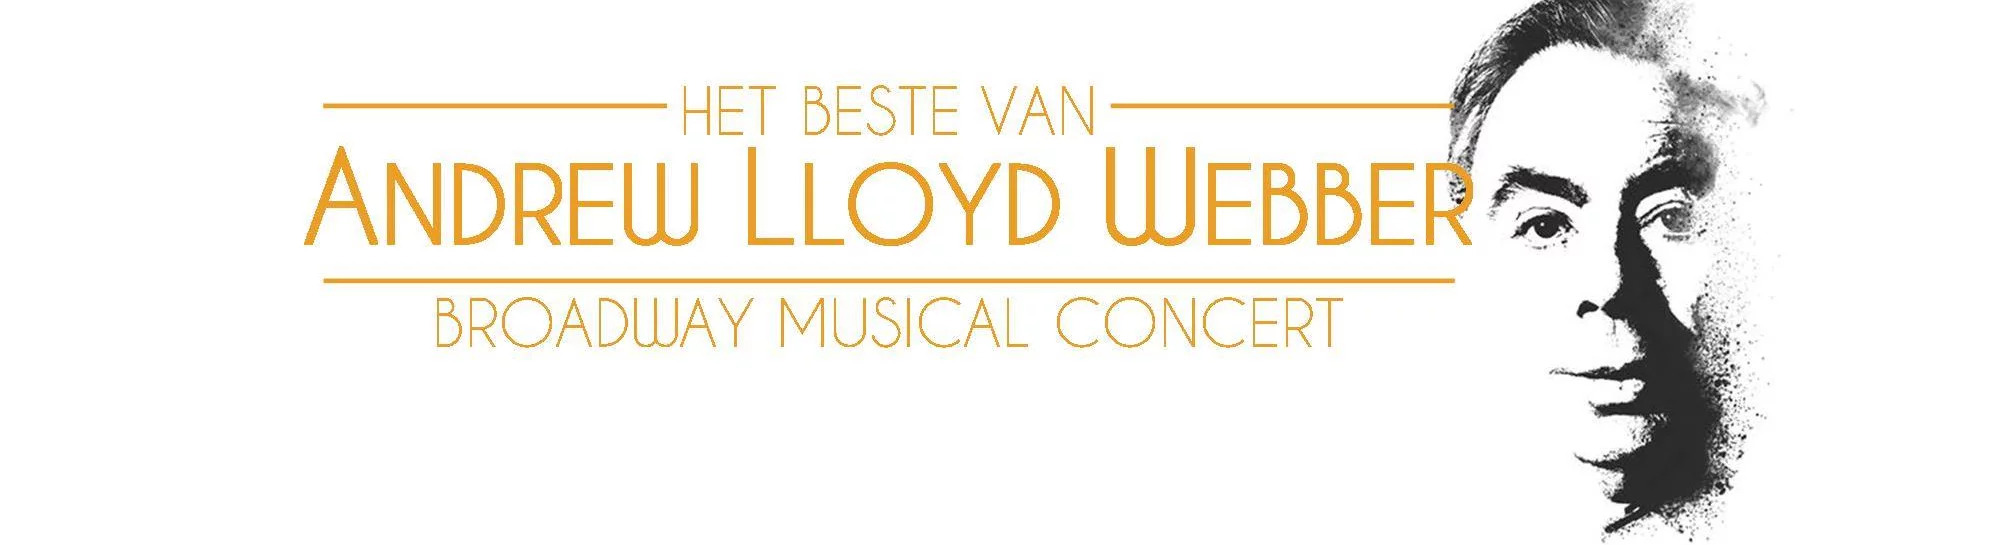 Afbeelding kan het volgende bevatten: een of meer mensen, de tekst 'BESTE VAN ANDREW LLOYD WEBBER BROADWAY MUSICAL CONCERT'